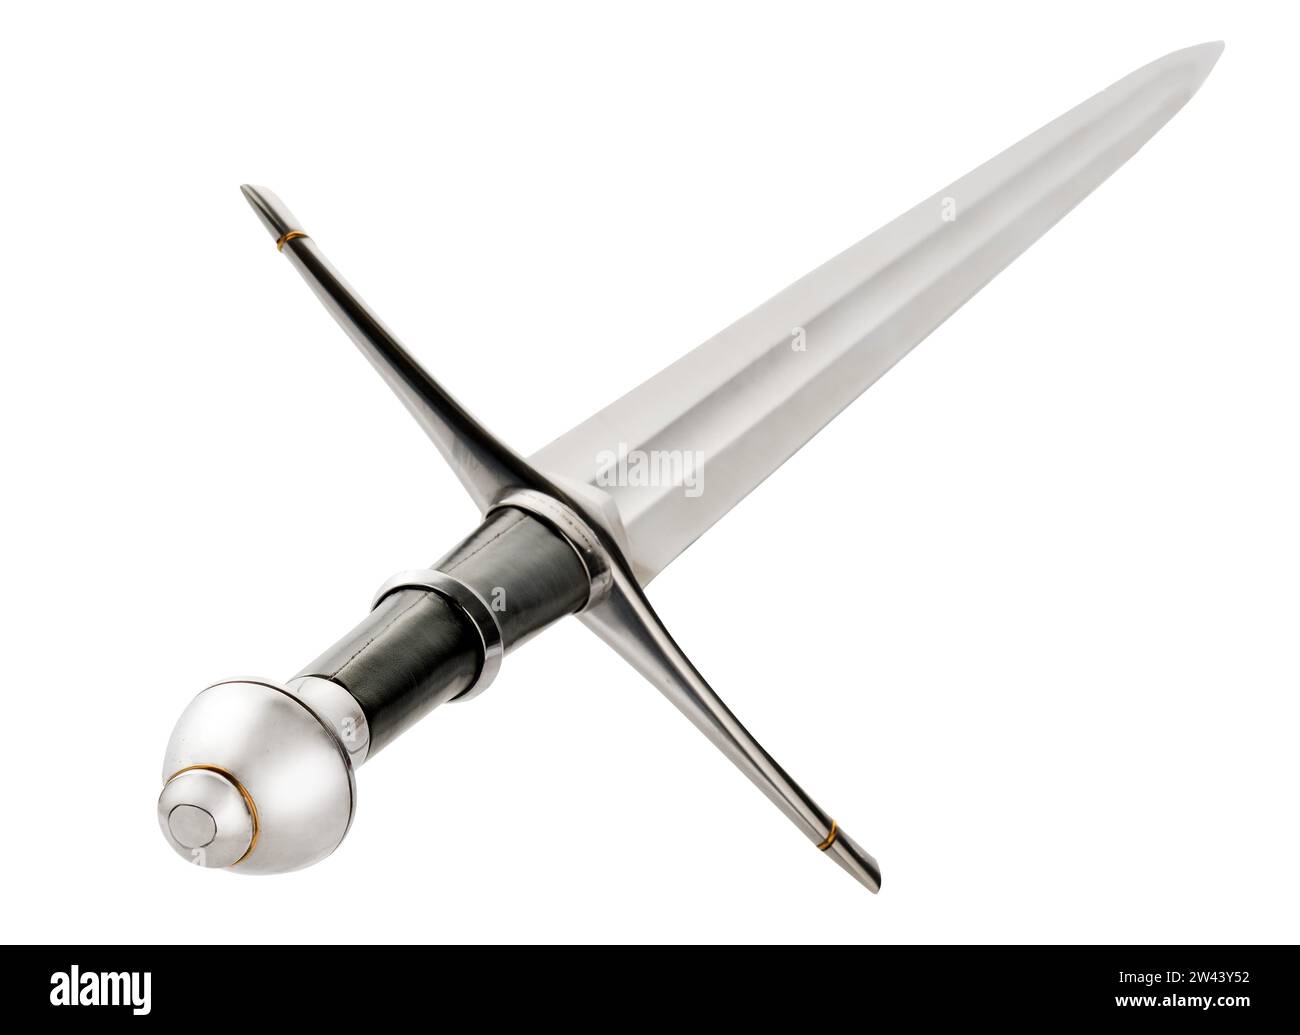 Striders Schwert. Schwert des Rangers Aragorn aus dem Film „Herr der Ringe“ Stockfoto